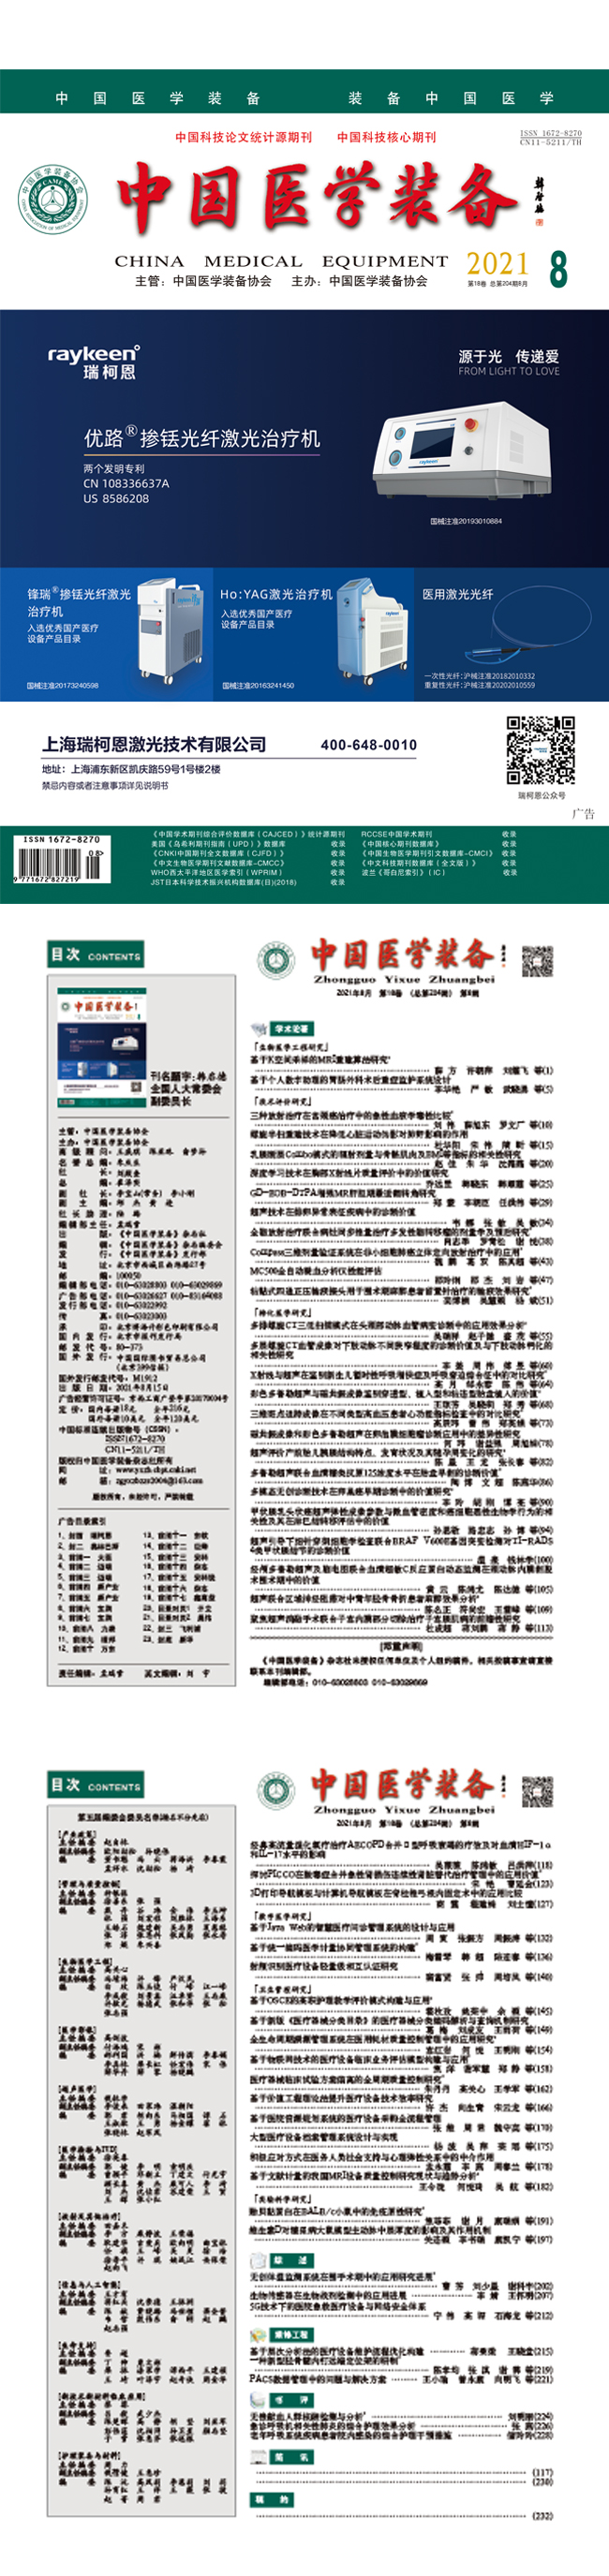 《中国医学装备》2021年8期出版(图1)